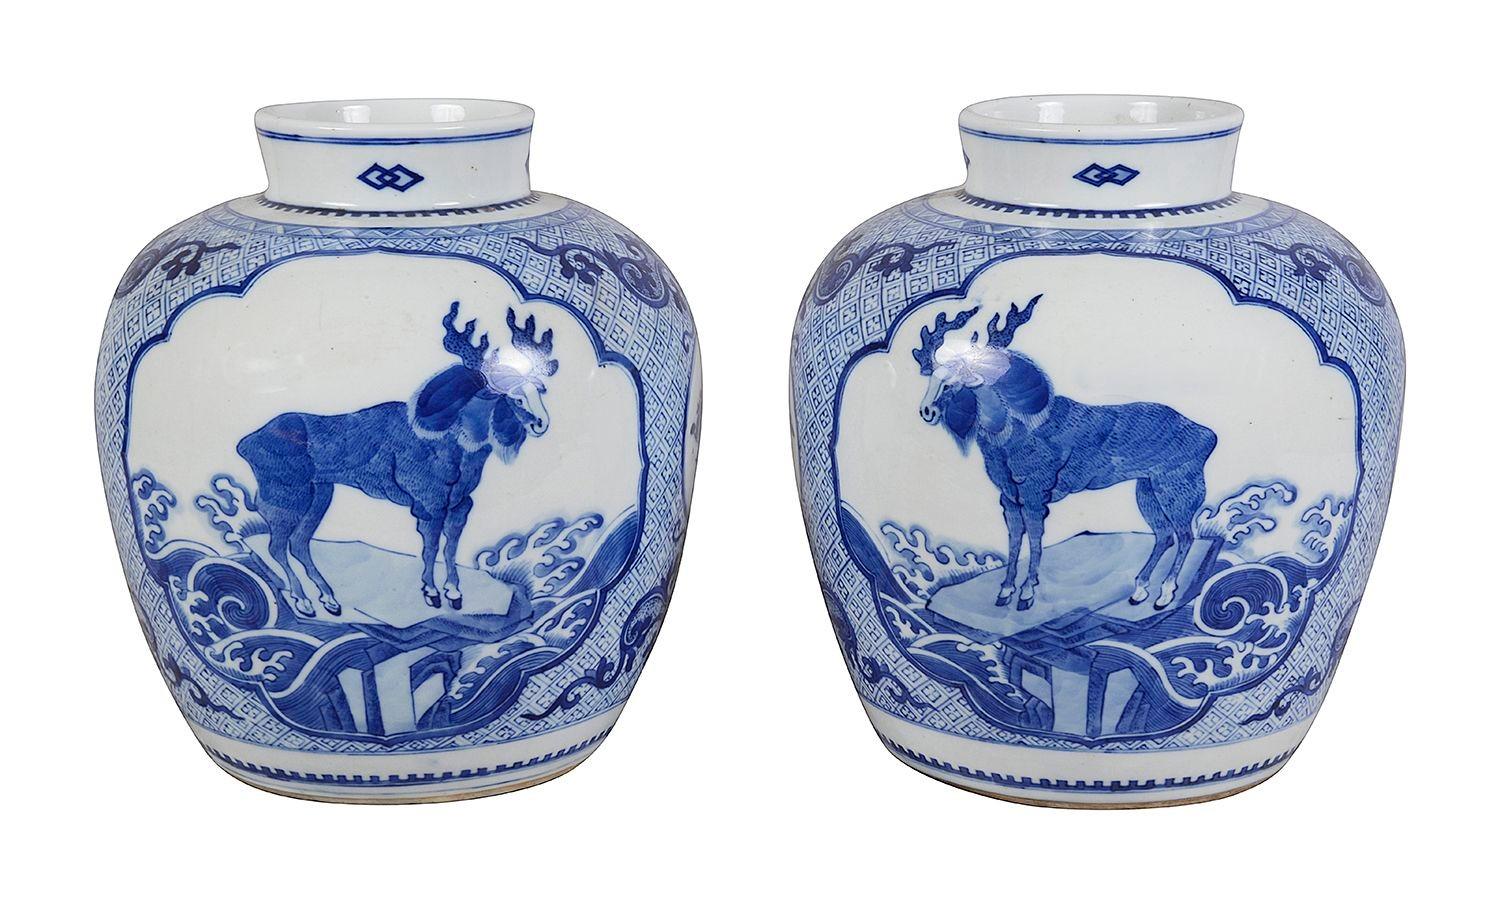 Une paire inhabituelle de lampes à pot de gingembre bleu et blanc de la Chine de la fin du 19e siècle. Chacun d'entre eux est orné d'un motif peint à la main sur le sol et de scènes d'élans et de créatures mythiques ailées peintes à la main. Montés